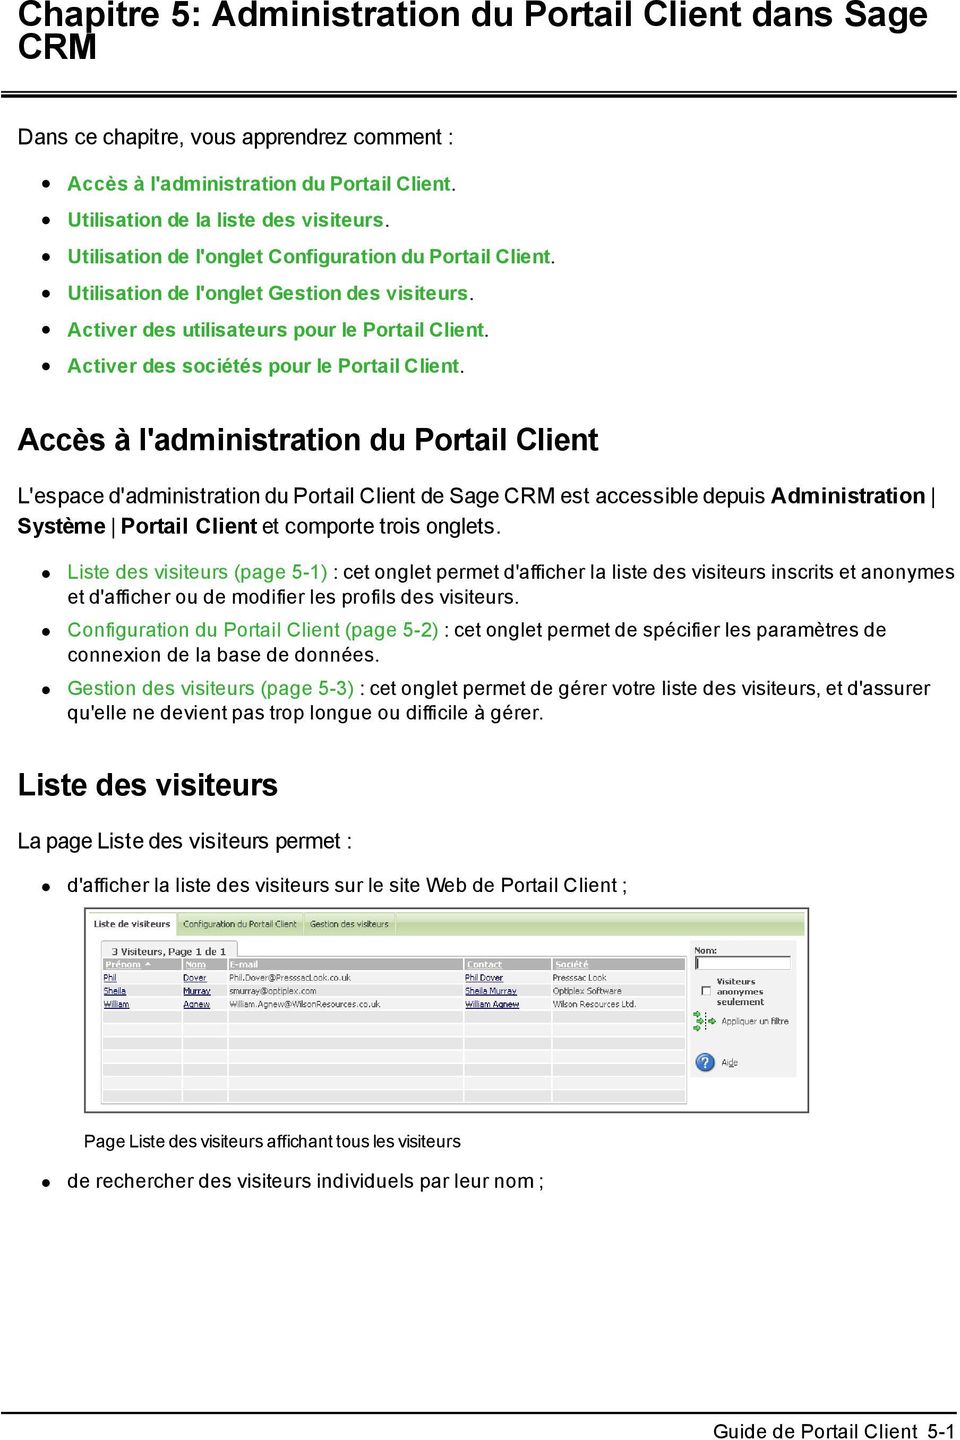 Accès à l'administration du Portail Client L'espace d'administration du Portail Client de Sage CRM est accessible depuis Administration Système Portail Client et comporte trois onglets.